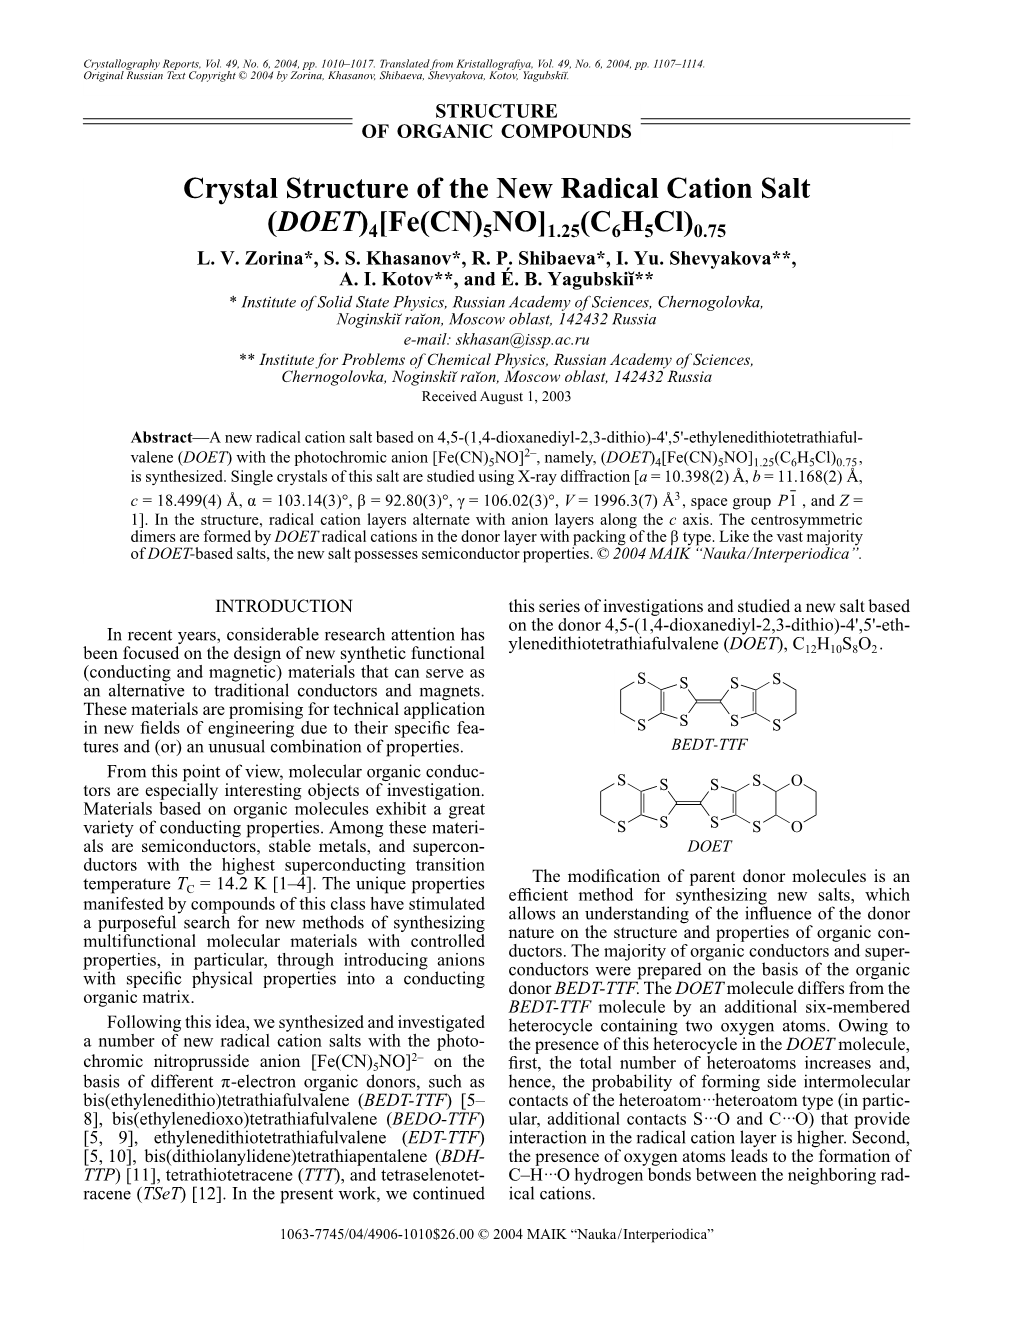 Crystal Structure of the New Radical Cation Salt (DOET)4[Fe(CN)5NO]1.25(C6h5cl)0.75 L